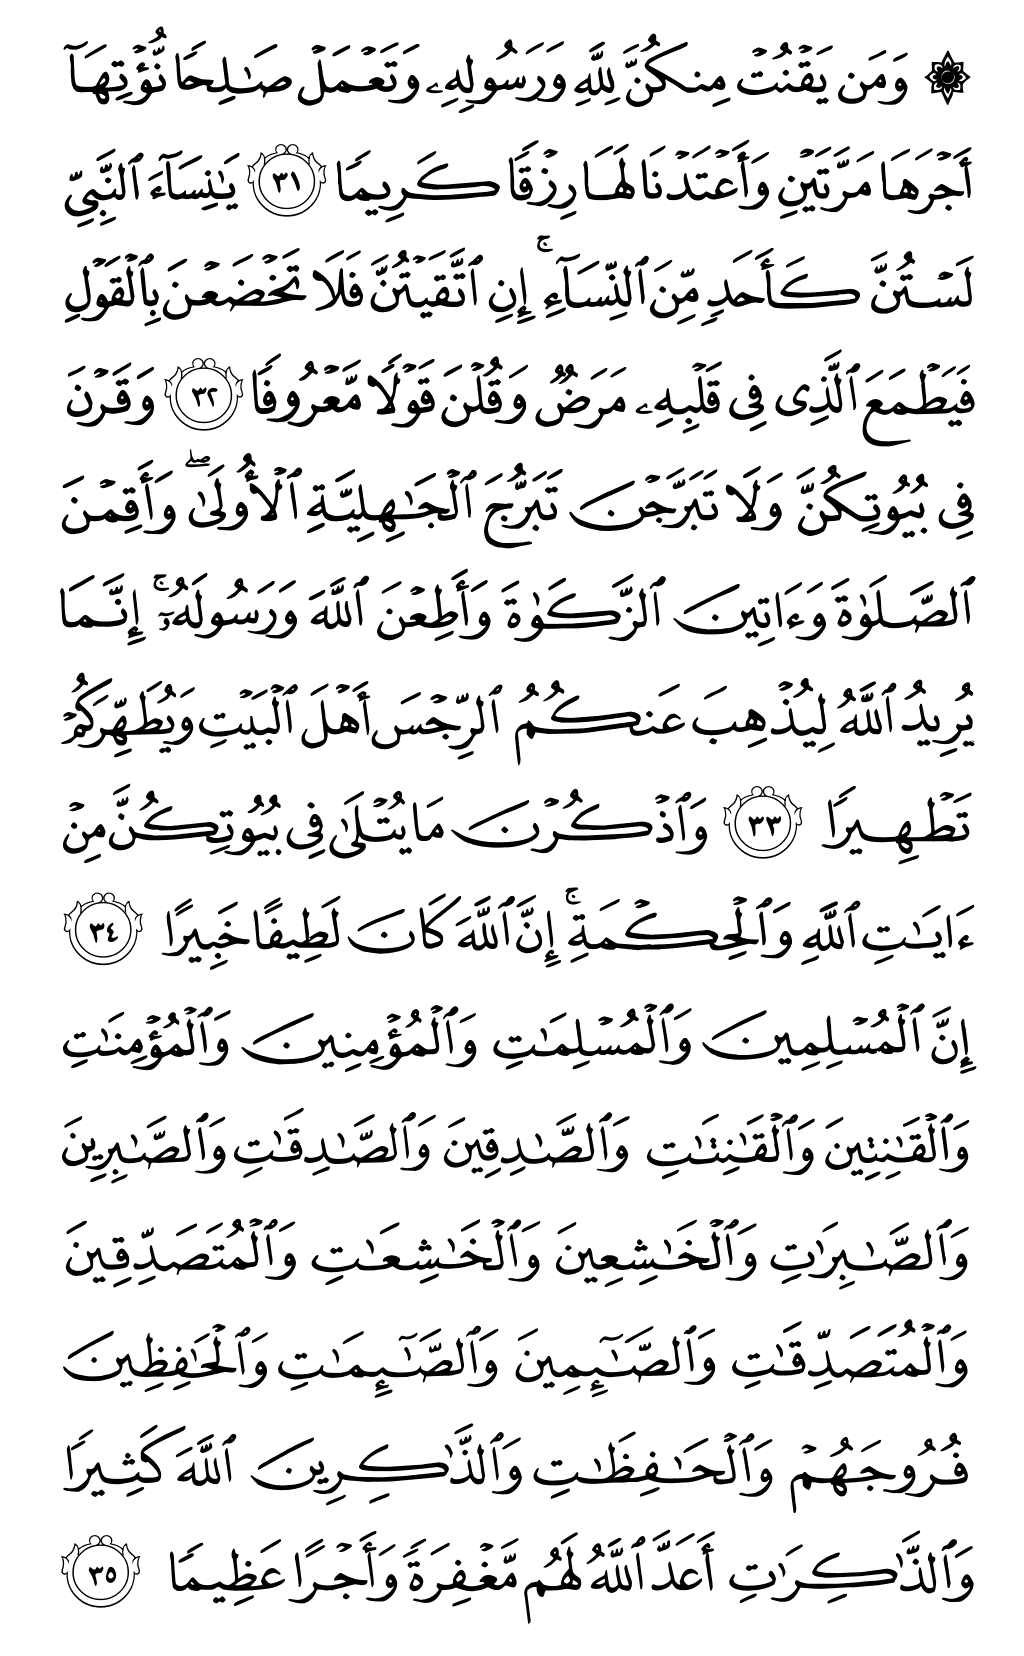 الصفحة رقم 422 من القرآن الكريم